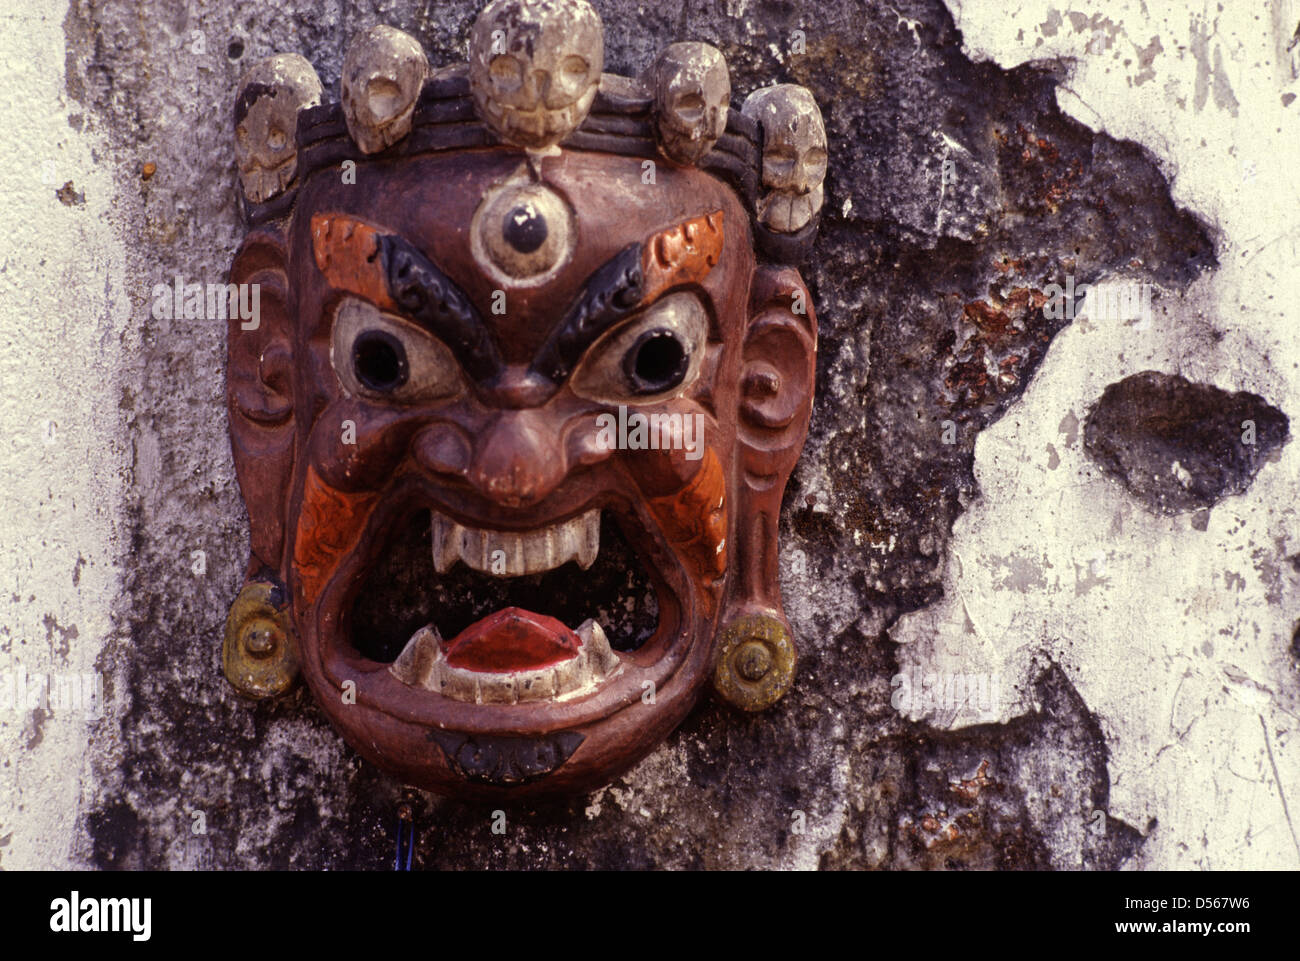 Sandalwood mask from India Stock Photo